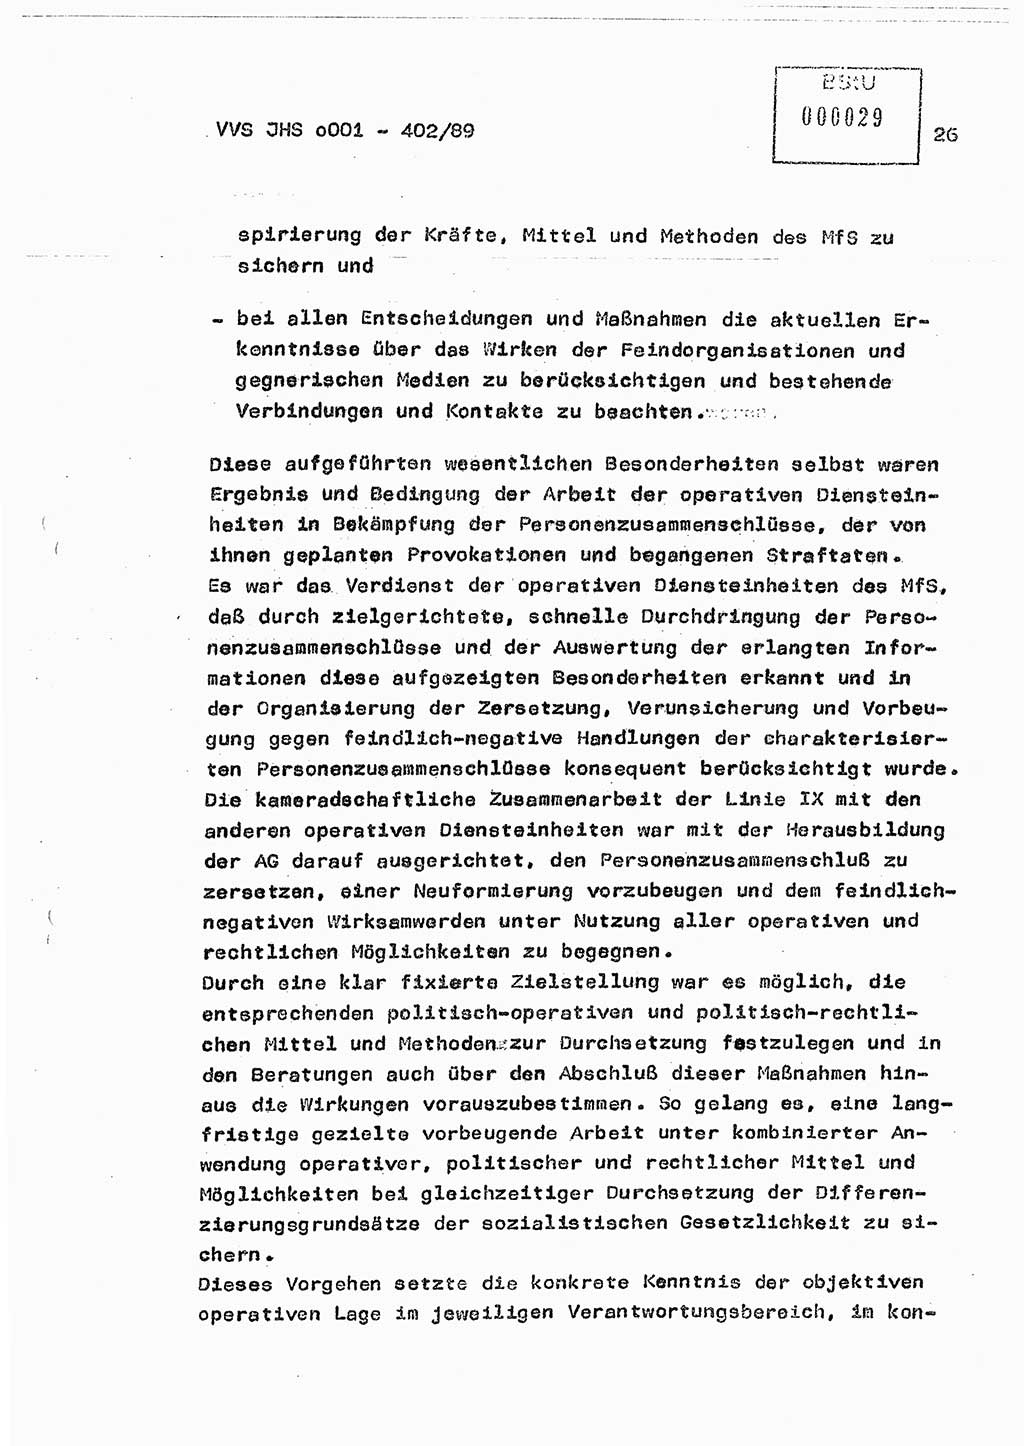 Diplomarbeit Major Günter Müller (HA Ⅸ/9), Ministerium für Staatssicherheit (MfS) [Deutsche Demokratische Republik (DDR)], Juristische Hochschule (JHS), Vertrauliche Verschlußsache (VVS) o001-402/89, Potsdam 1989, Seite 26 (Dipl.-Arb. MfS DDR JHS VVS o001-402/89 1989, S. 26)